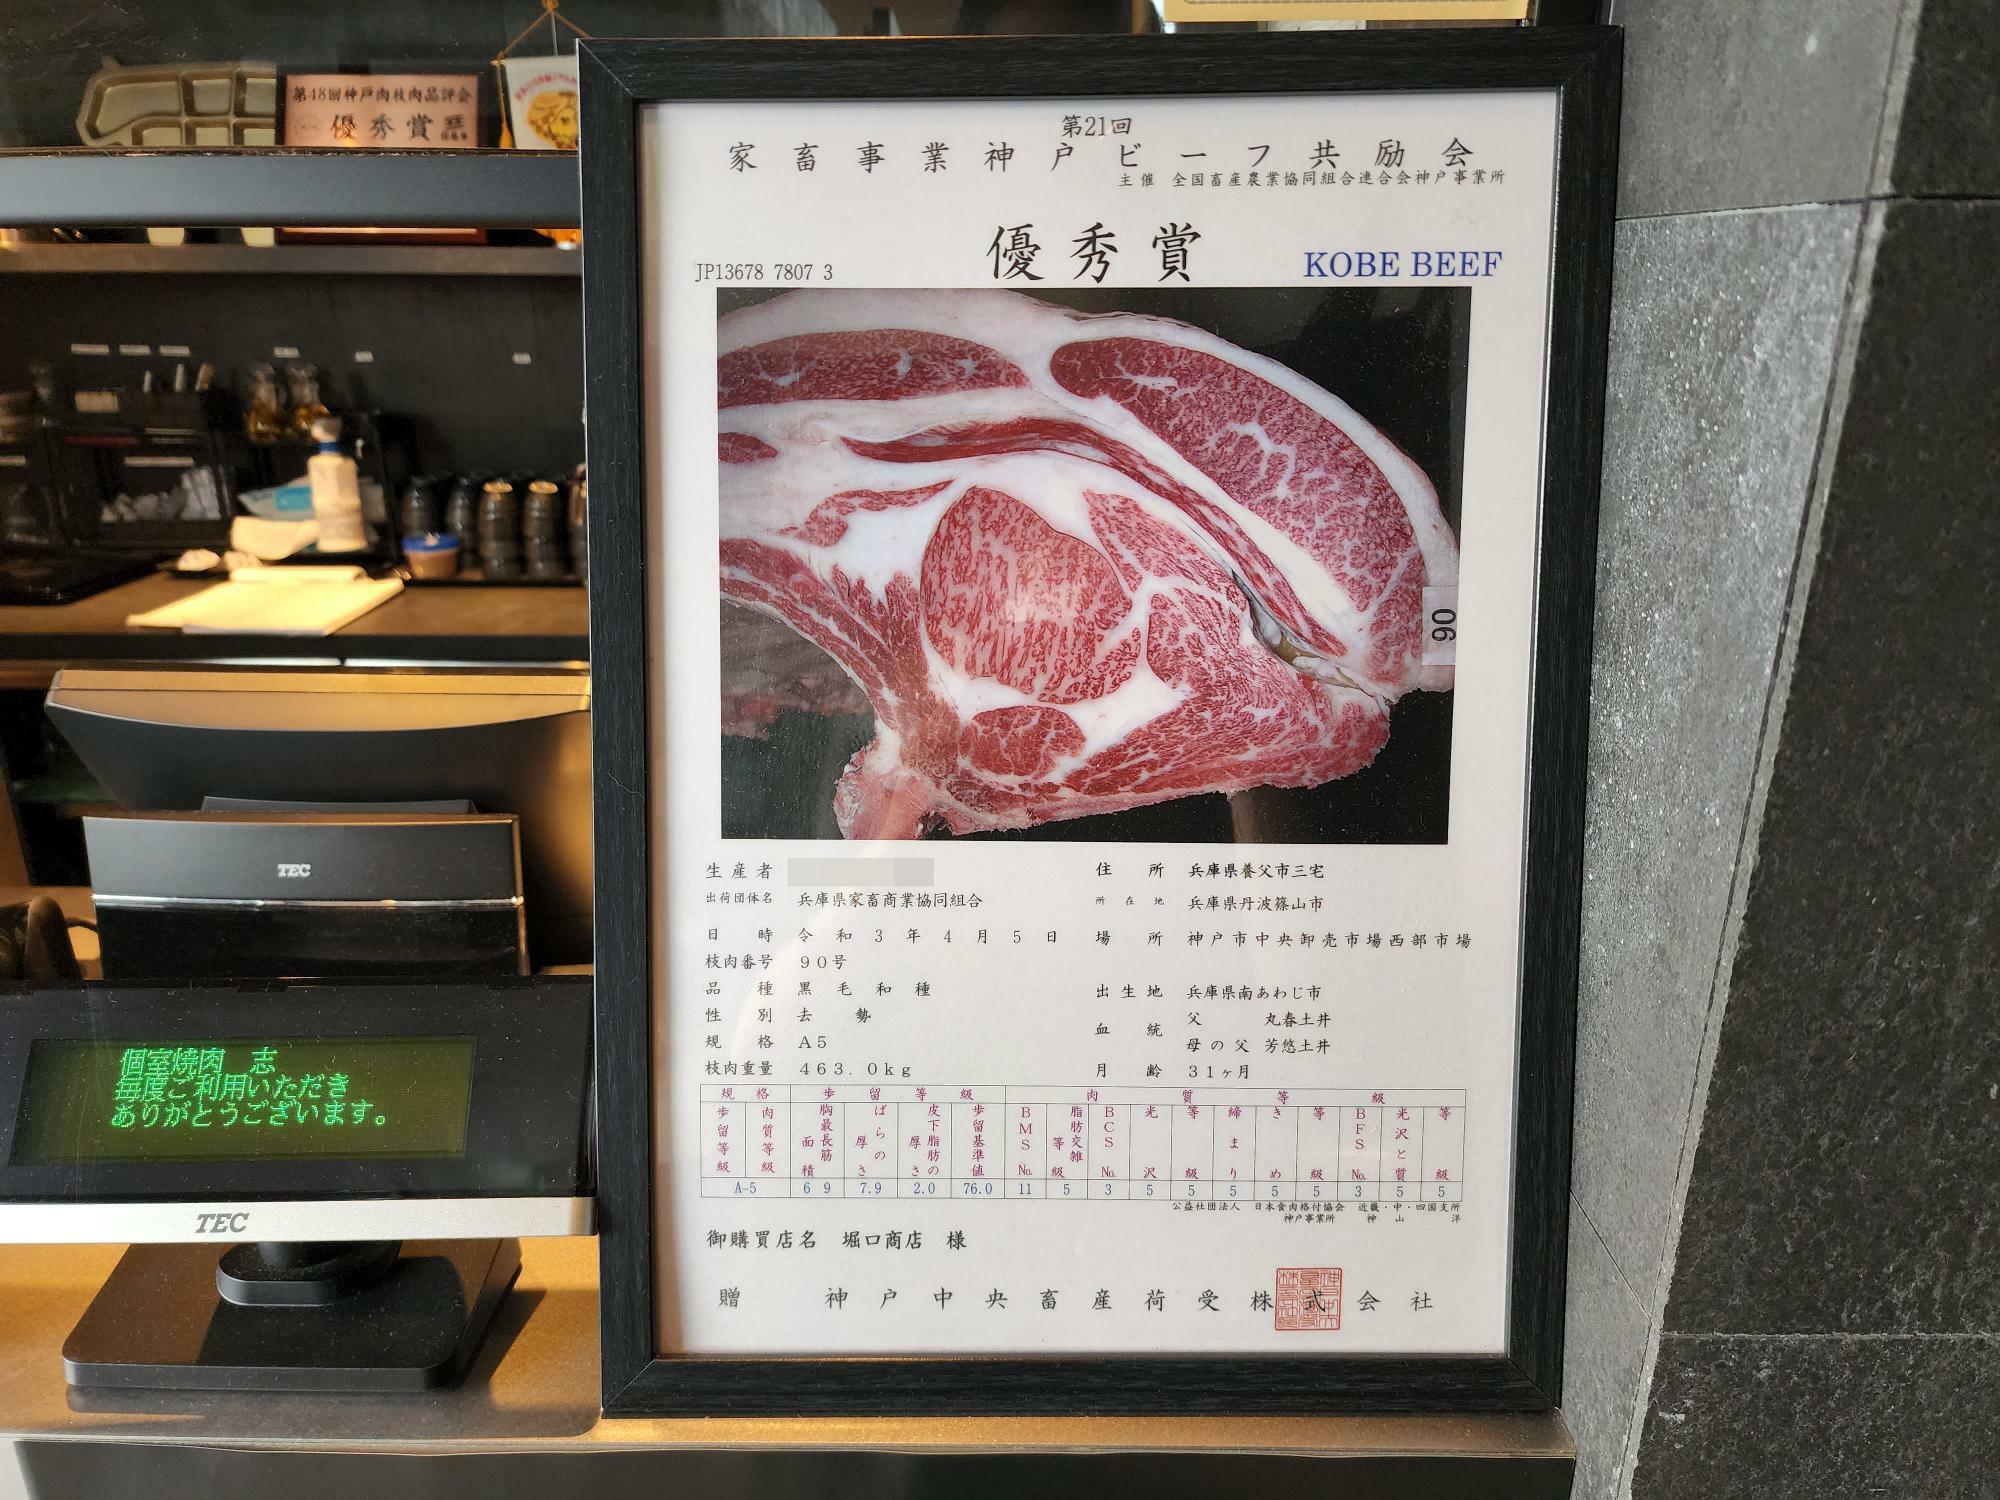 「個室焼肉 志（しるし）」飾ってあった「第21回 家畜事業神戸ビーフ共励会」優秀賞についての掲示物。